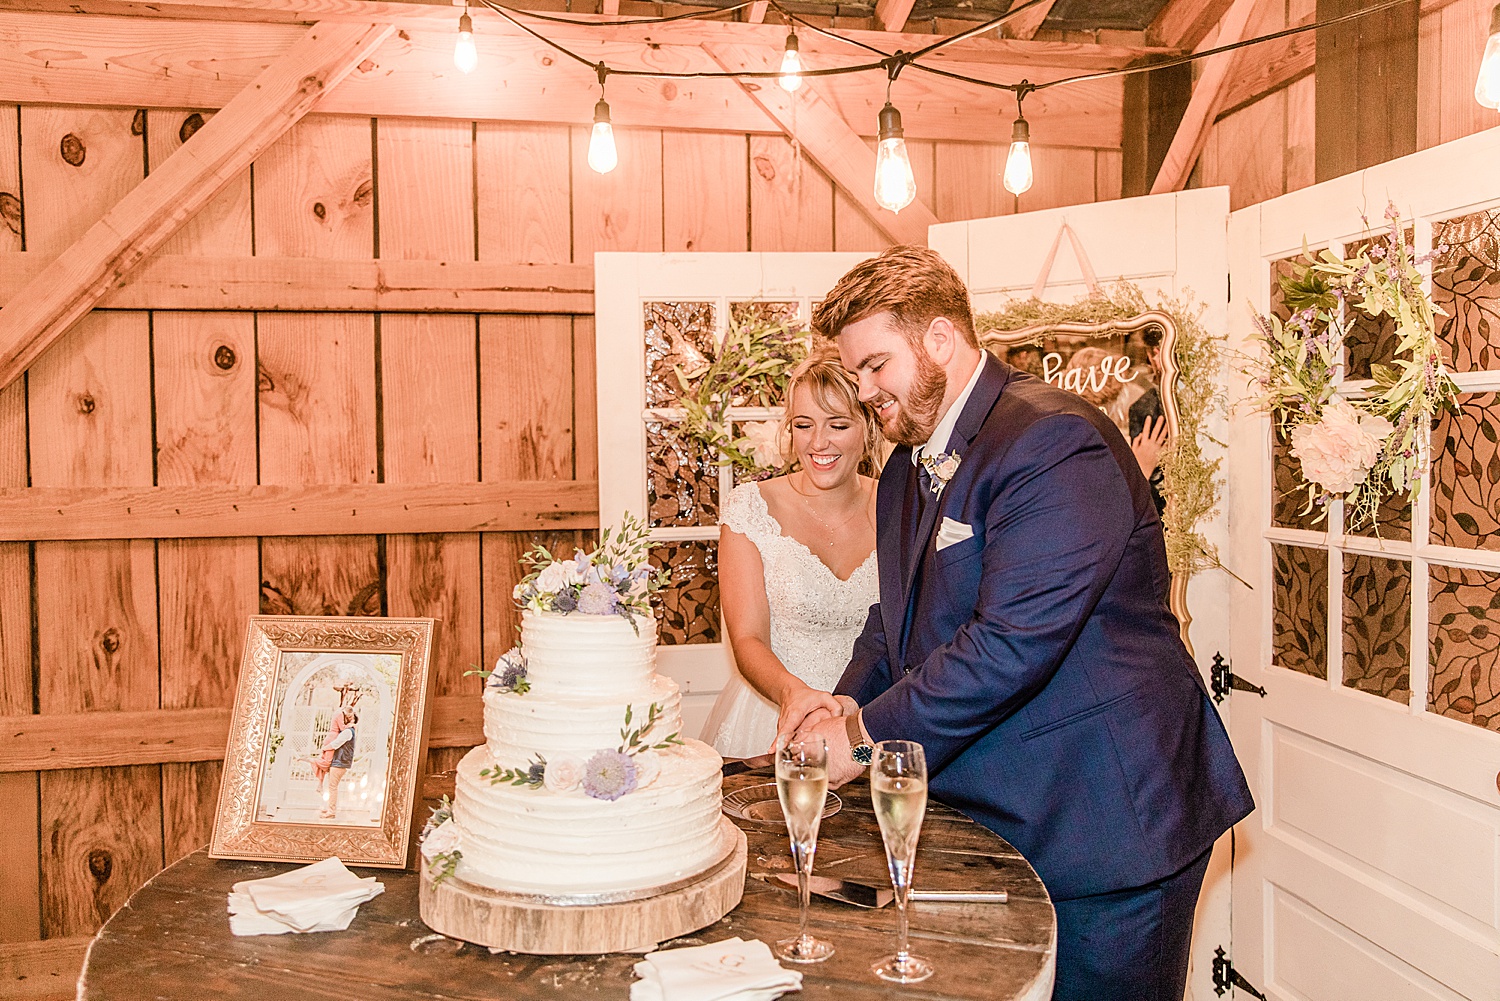 newlyweds cut their wedding cake at AL Applewood farms wedding reception